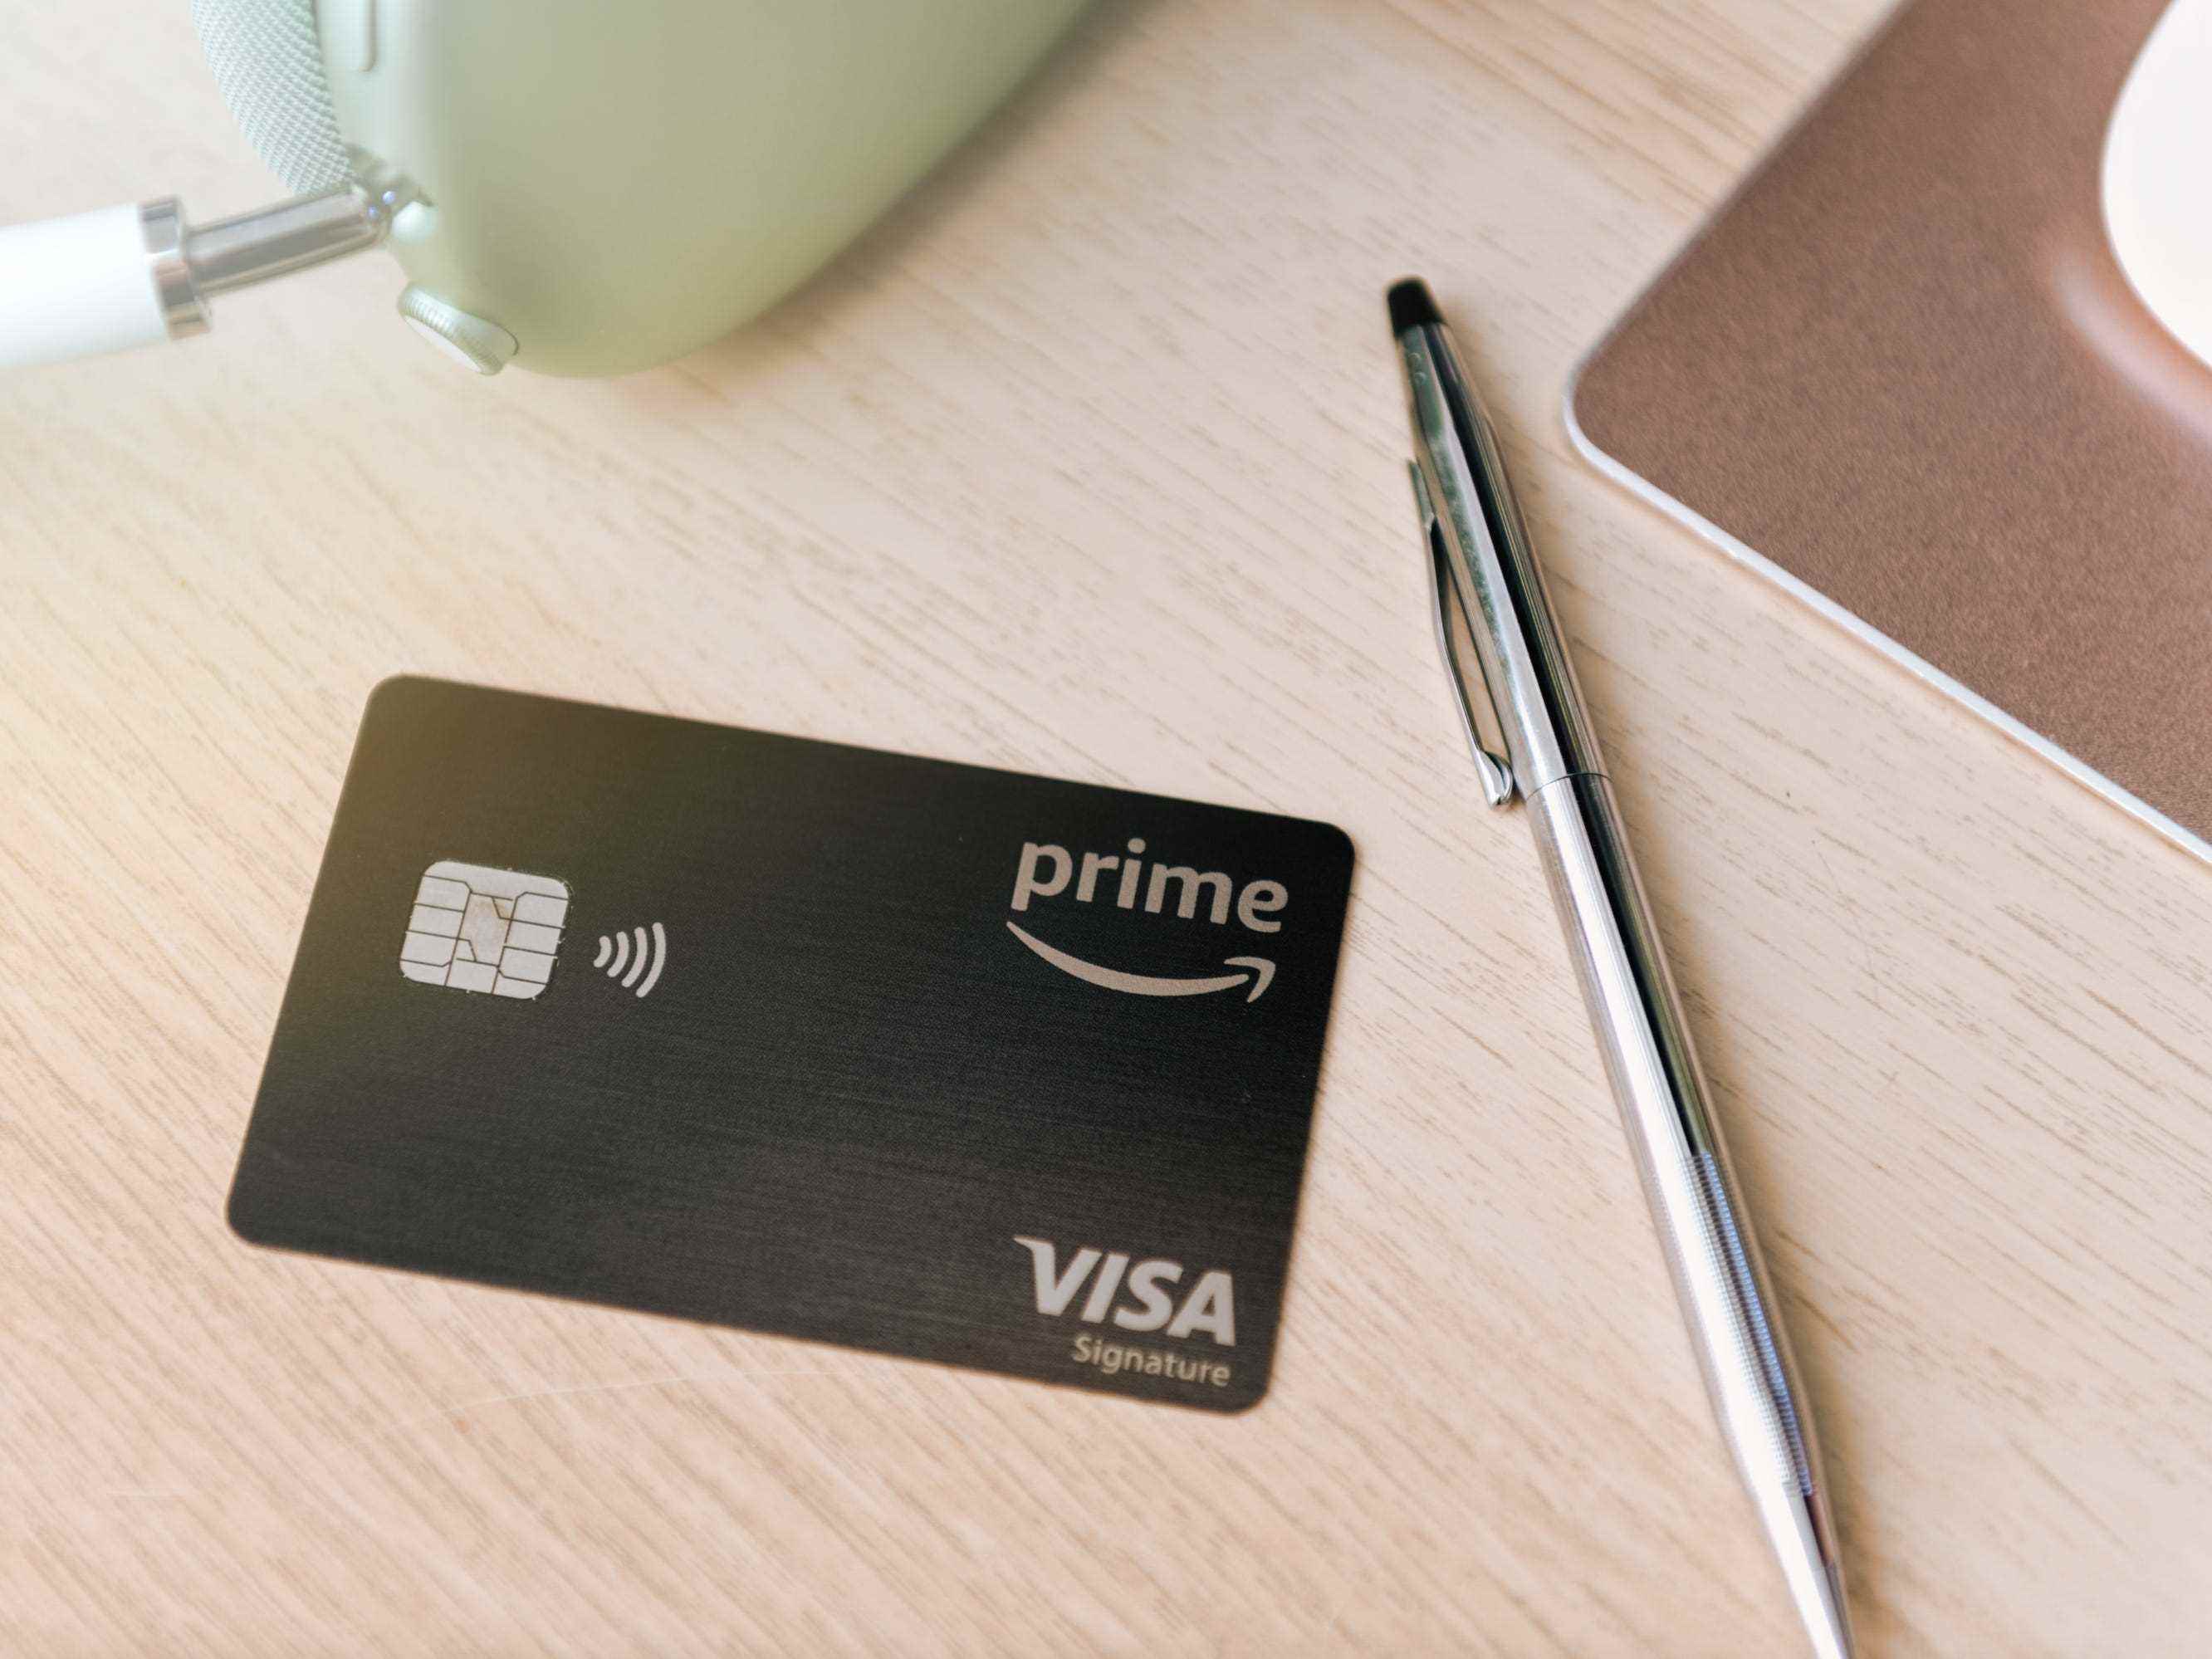 Eine Amazon Prime Rewards Visa Card, die auf einem Tisch liegt.